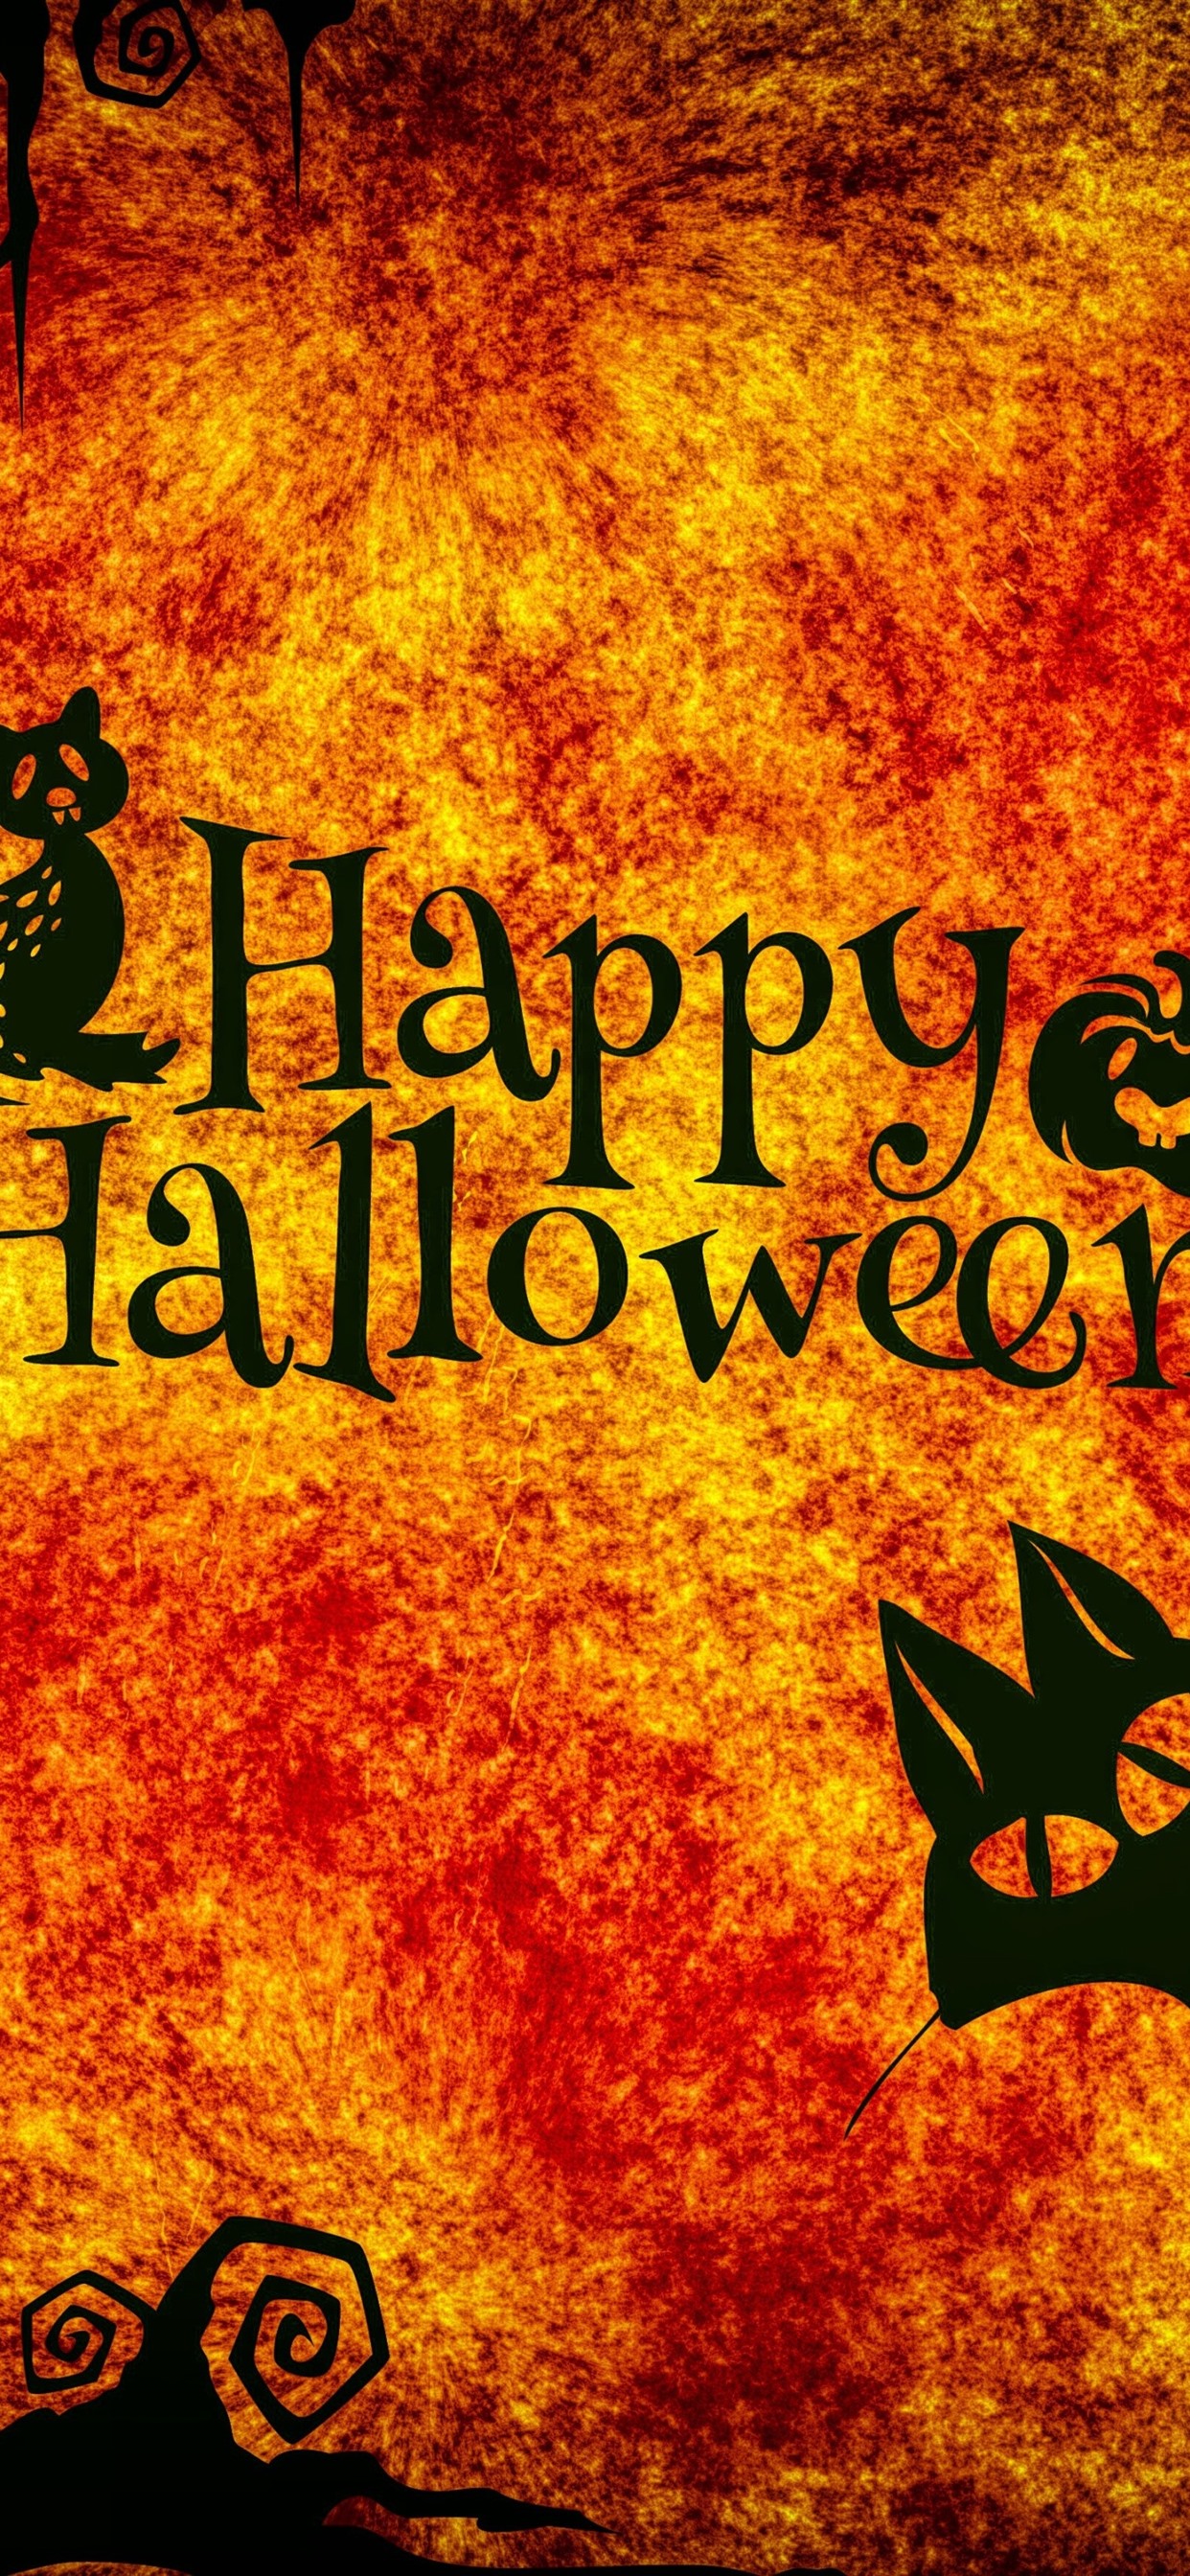 Happy Halloween, night, cats, owl, spider, pumpkin 1242x2688